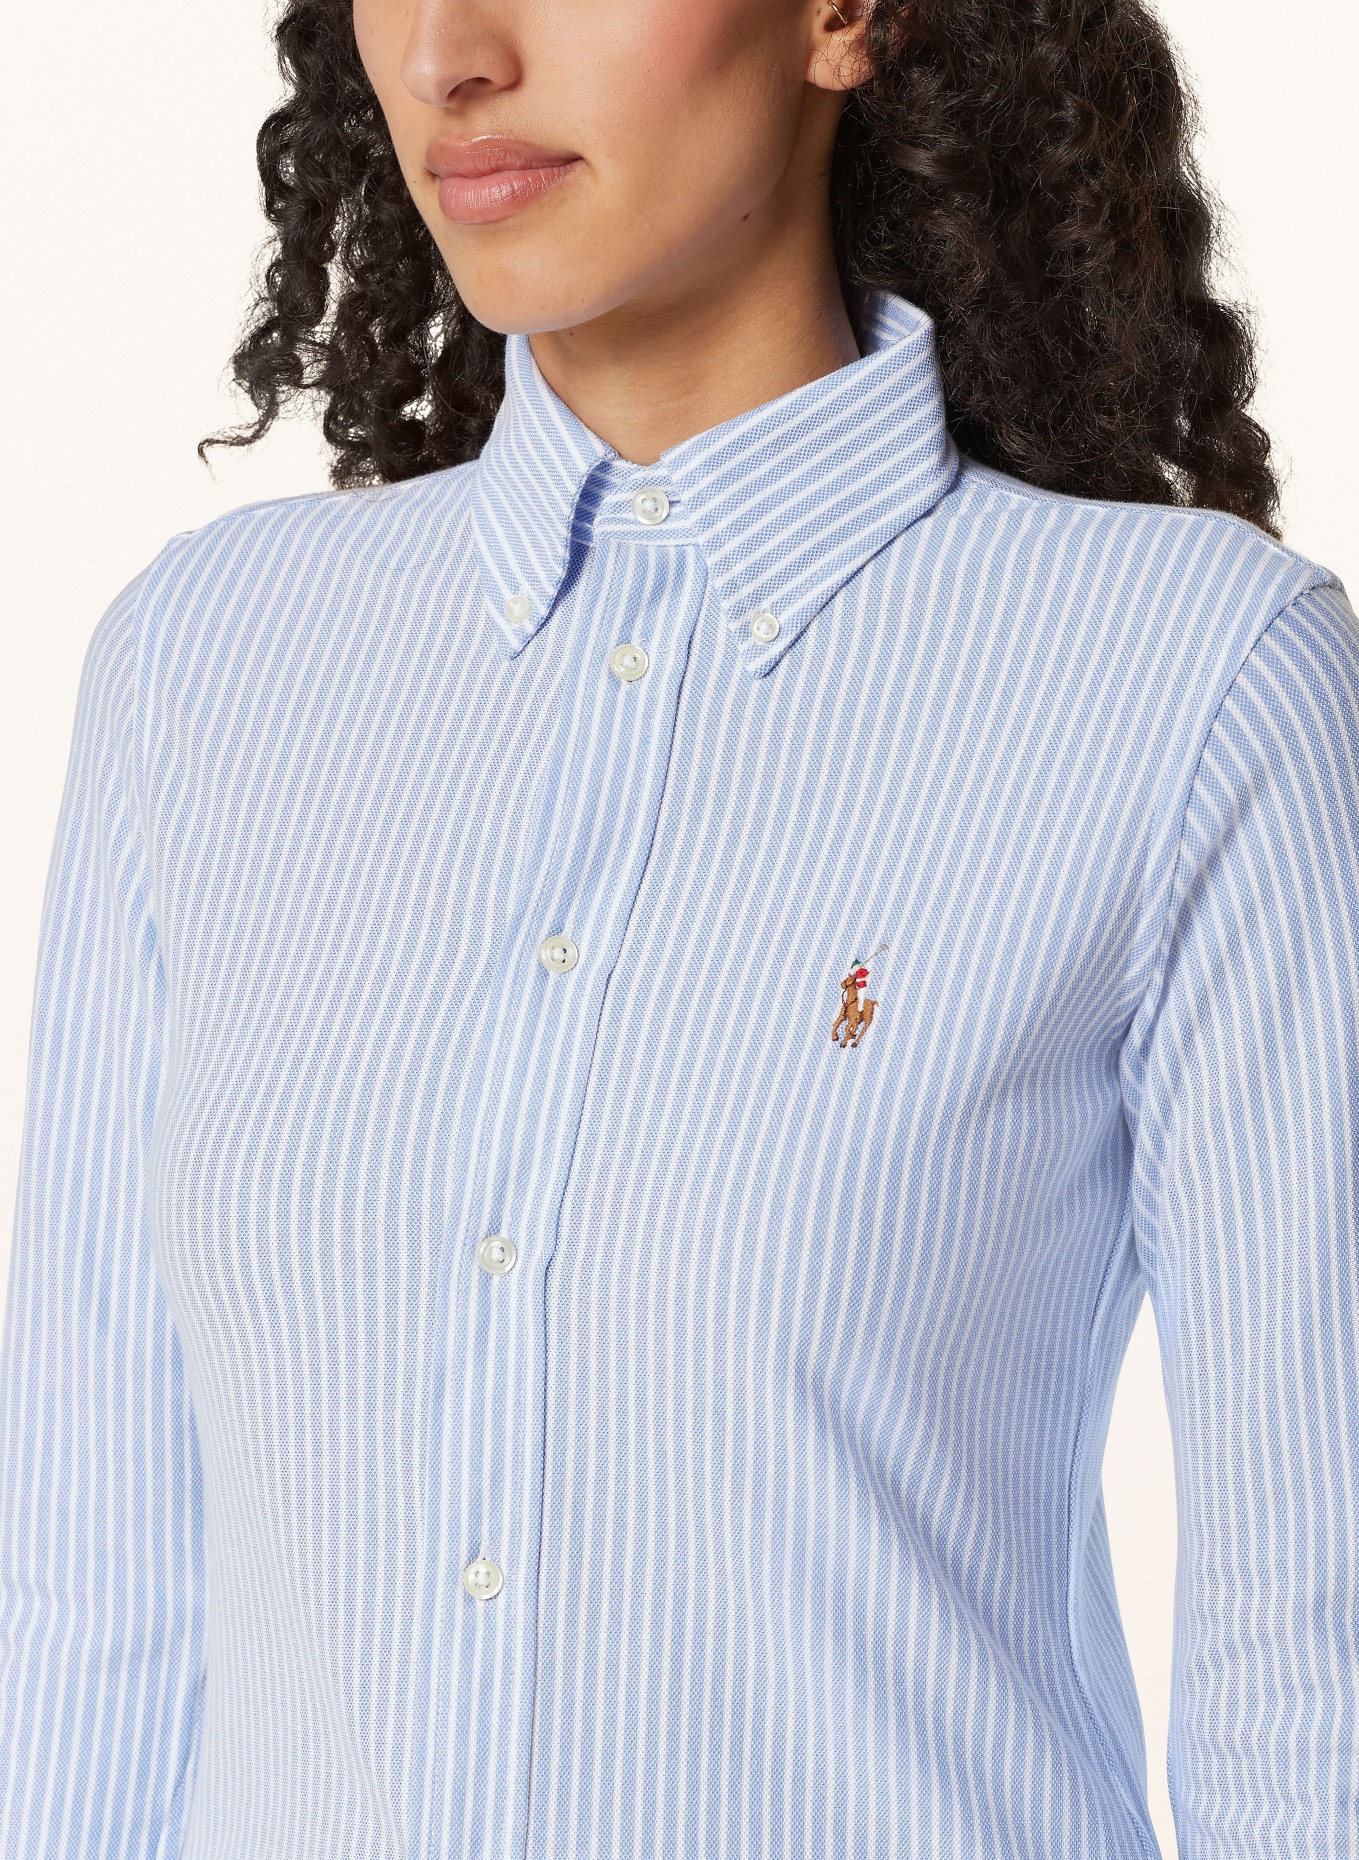 POLO RALPH LAUREN Shirt blouse, Color: WHITE/ LIGHT BLUE (Image 4)